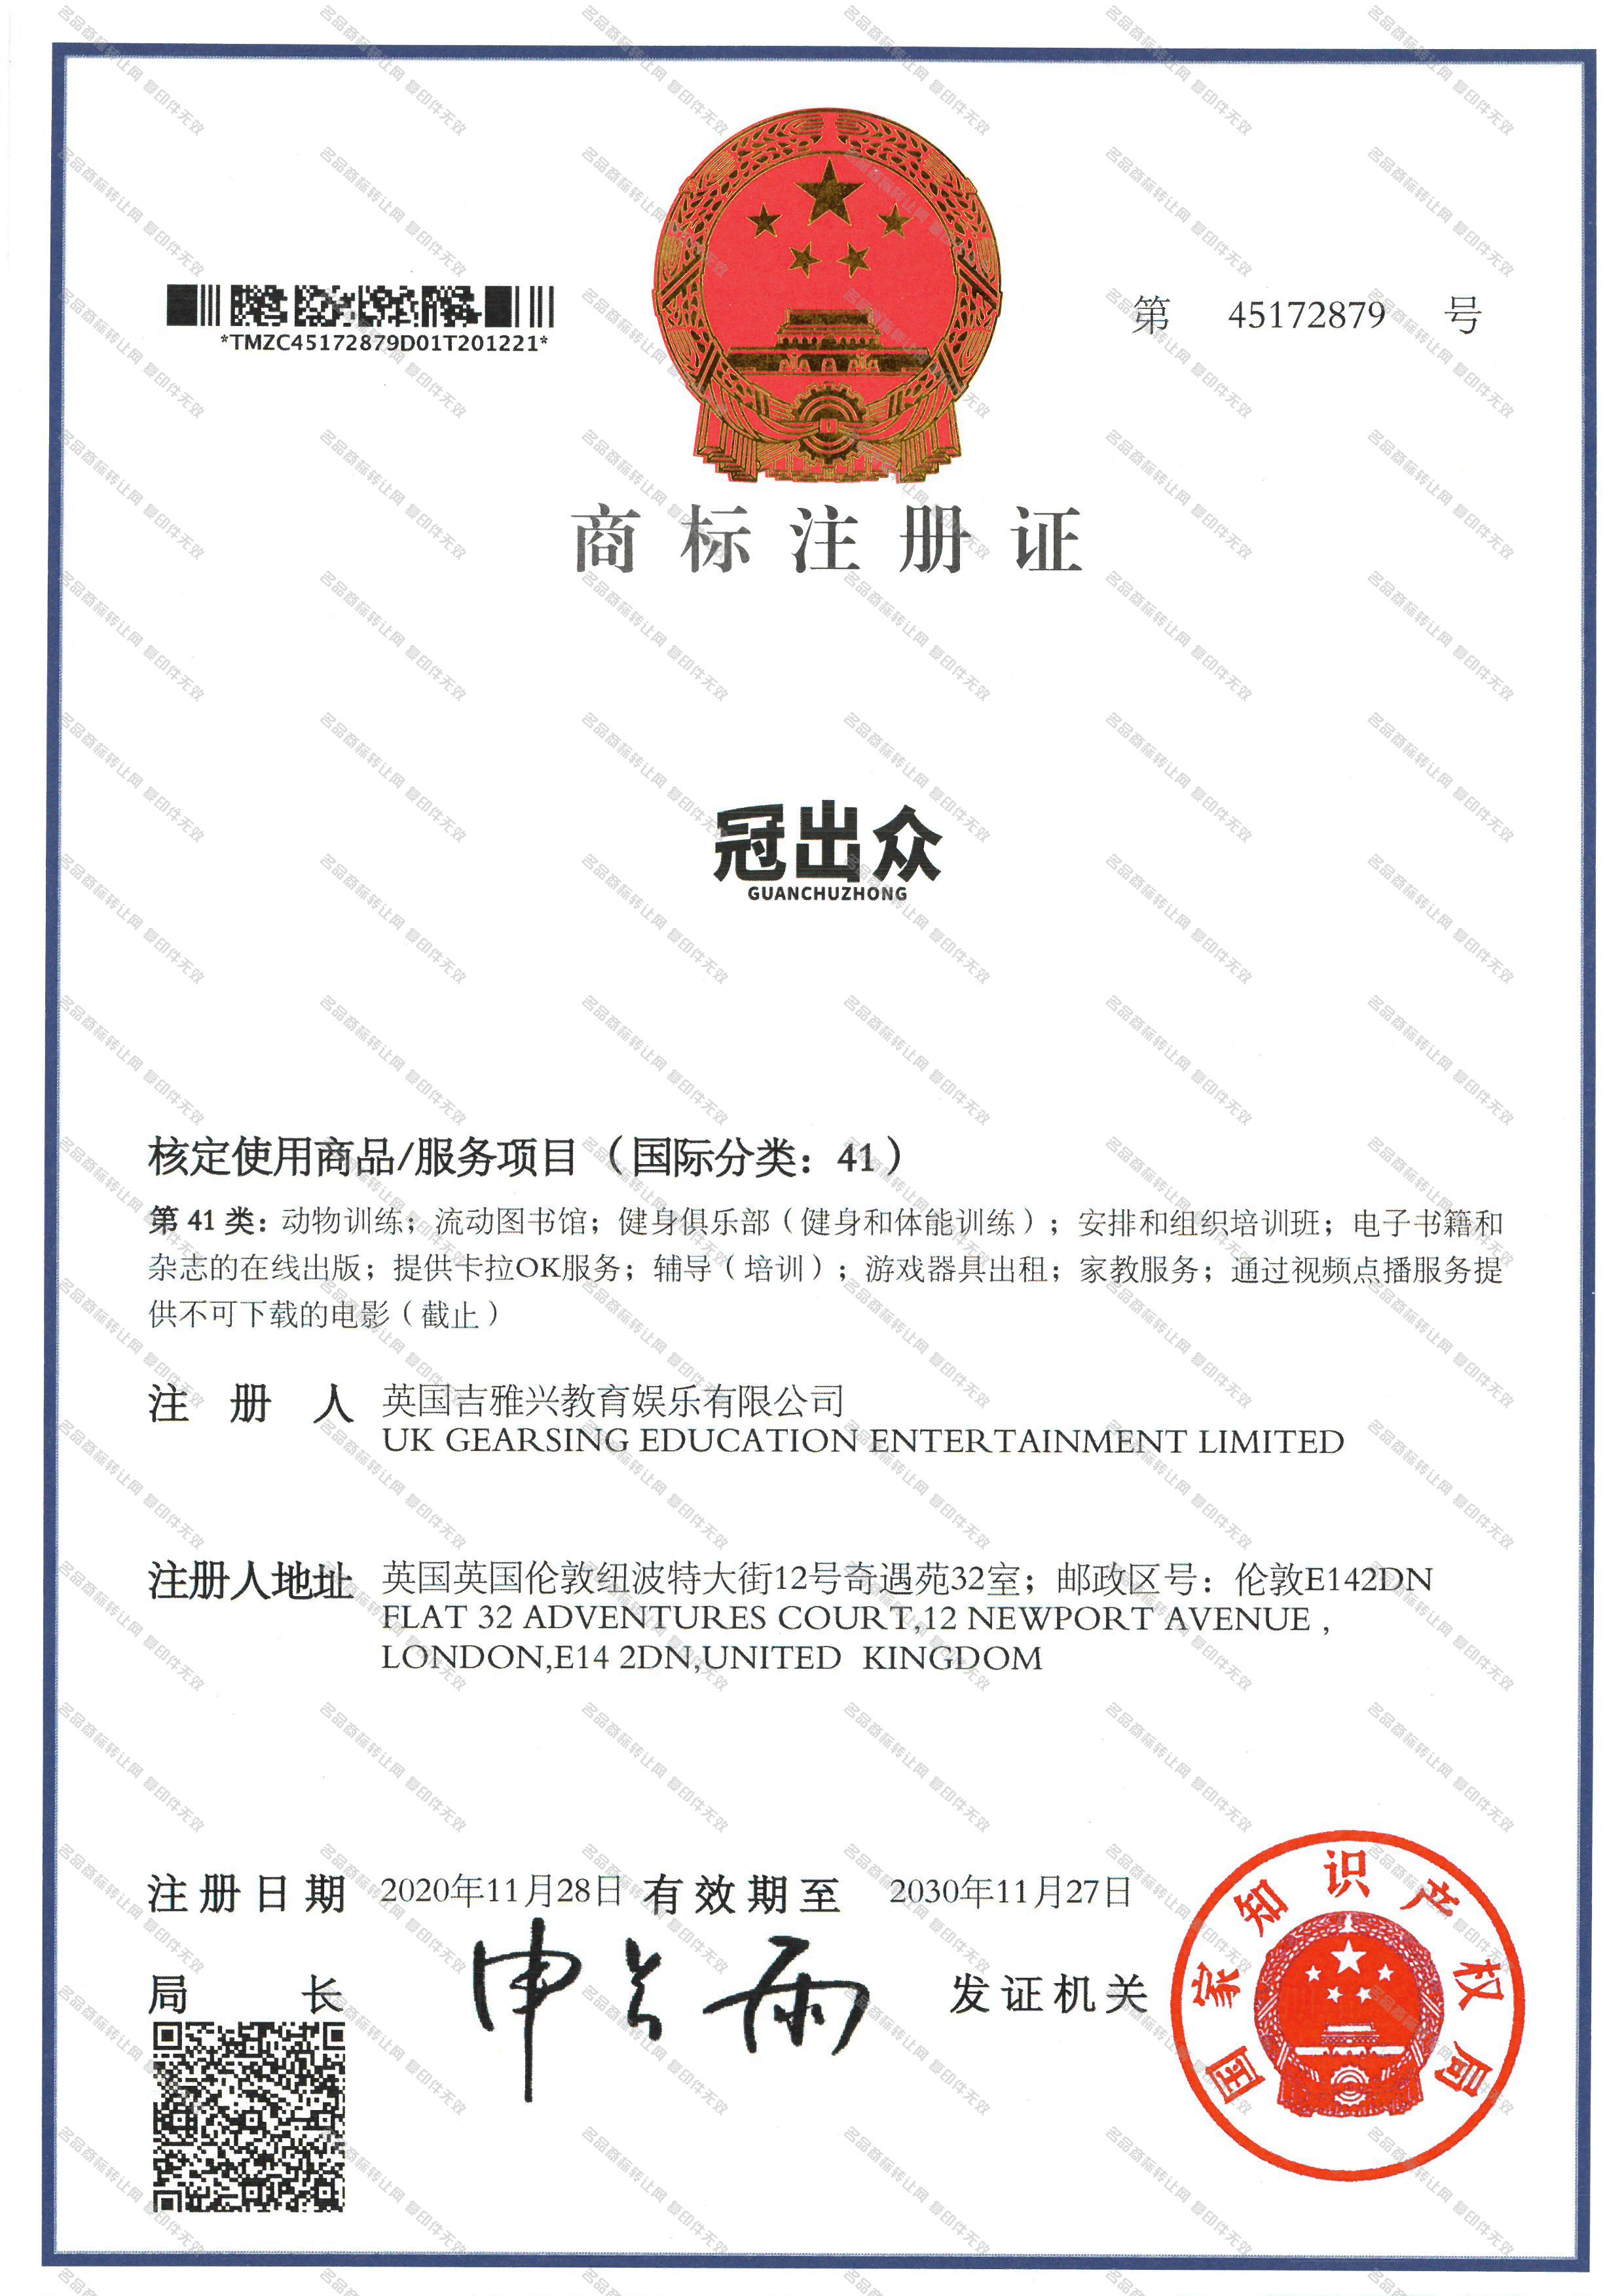 冠出众 GUAN CHU ZHONG注册证